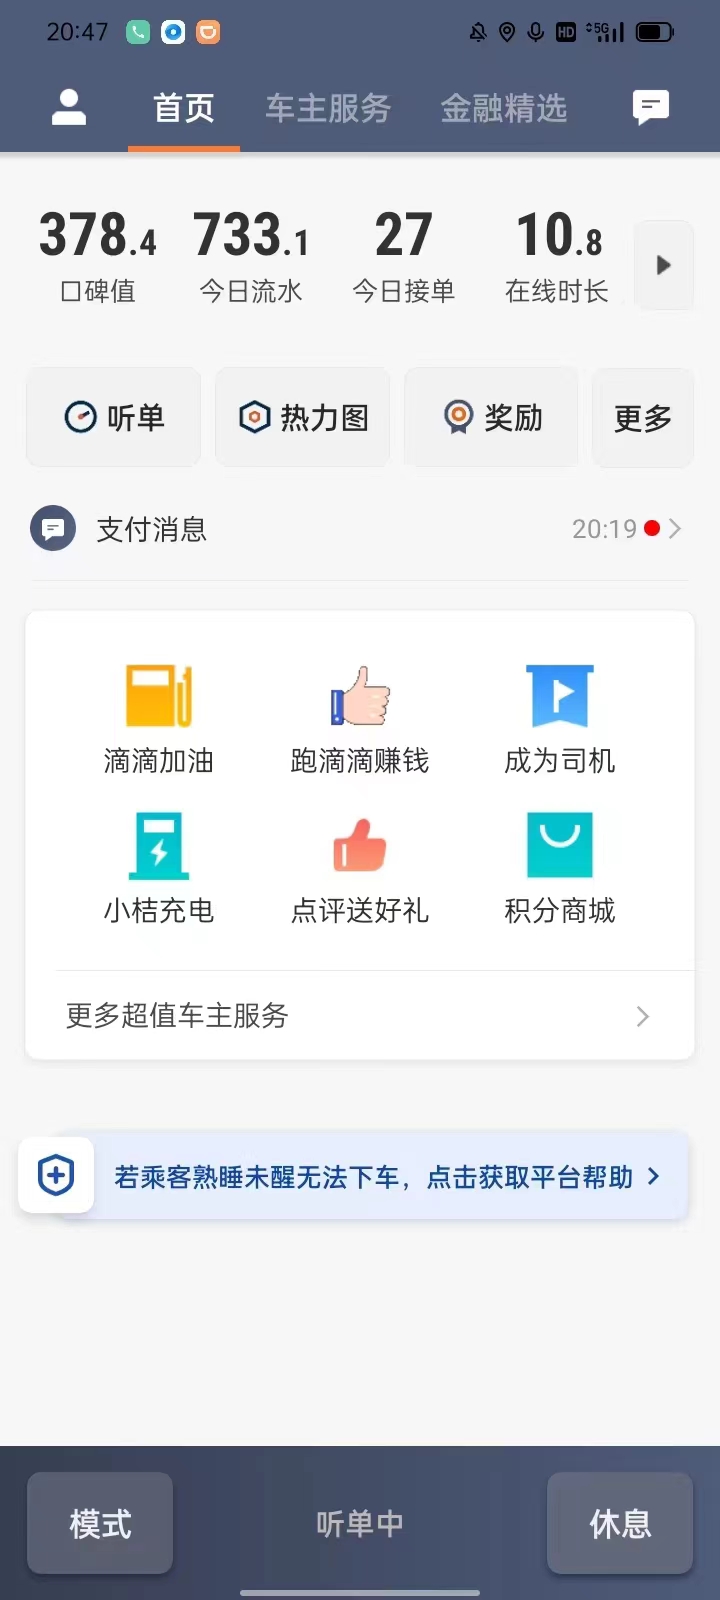 主变量重庆网约车驾驶员资格证怎么考热点新闻